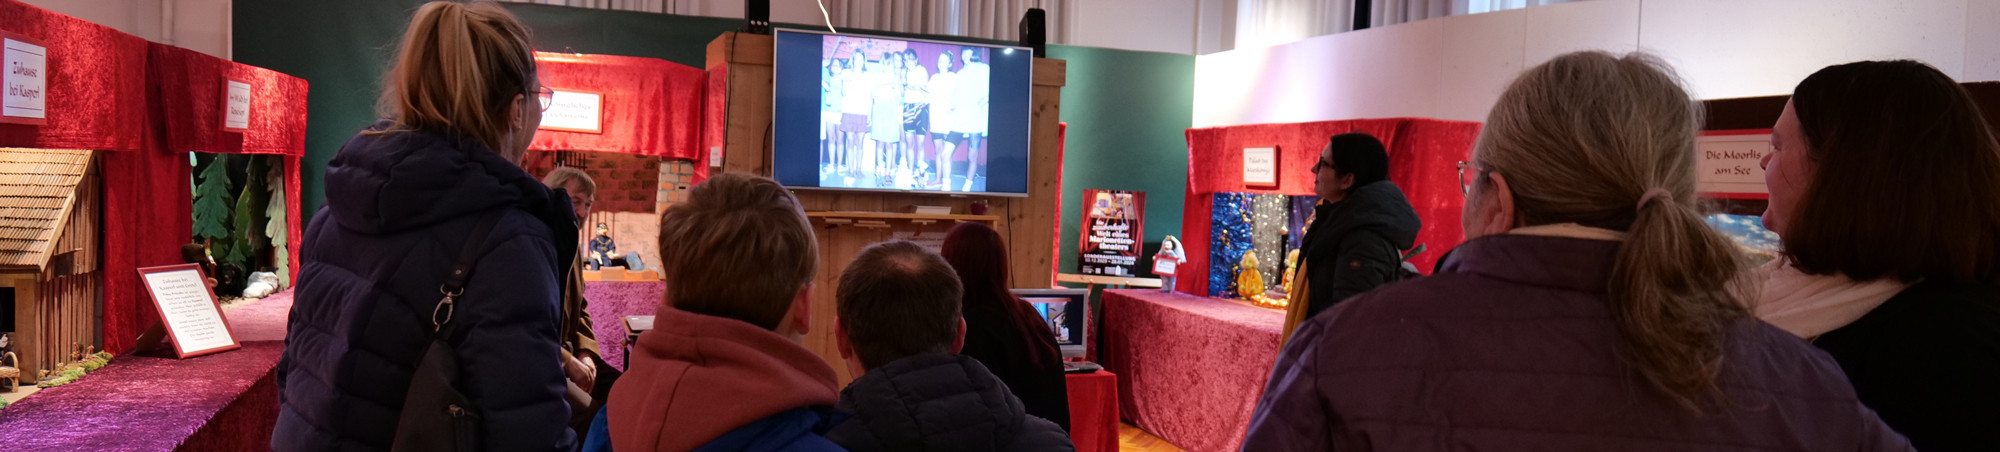 Der Kurator spielt Marionettenszenen auf einem großen Bildschirm ein und erläutert den Besuchern, wie Marionettentheater, gespielt von Schülern, funktioniert. Sch